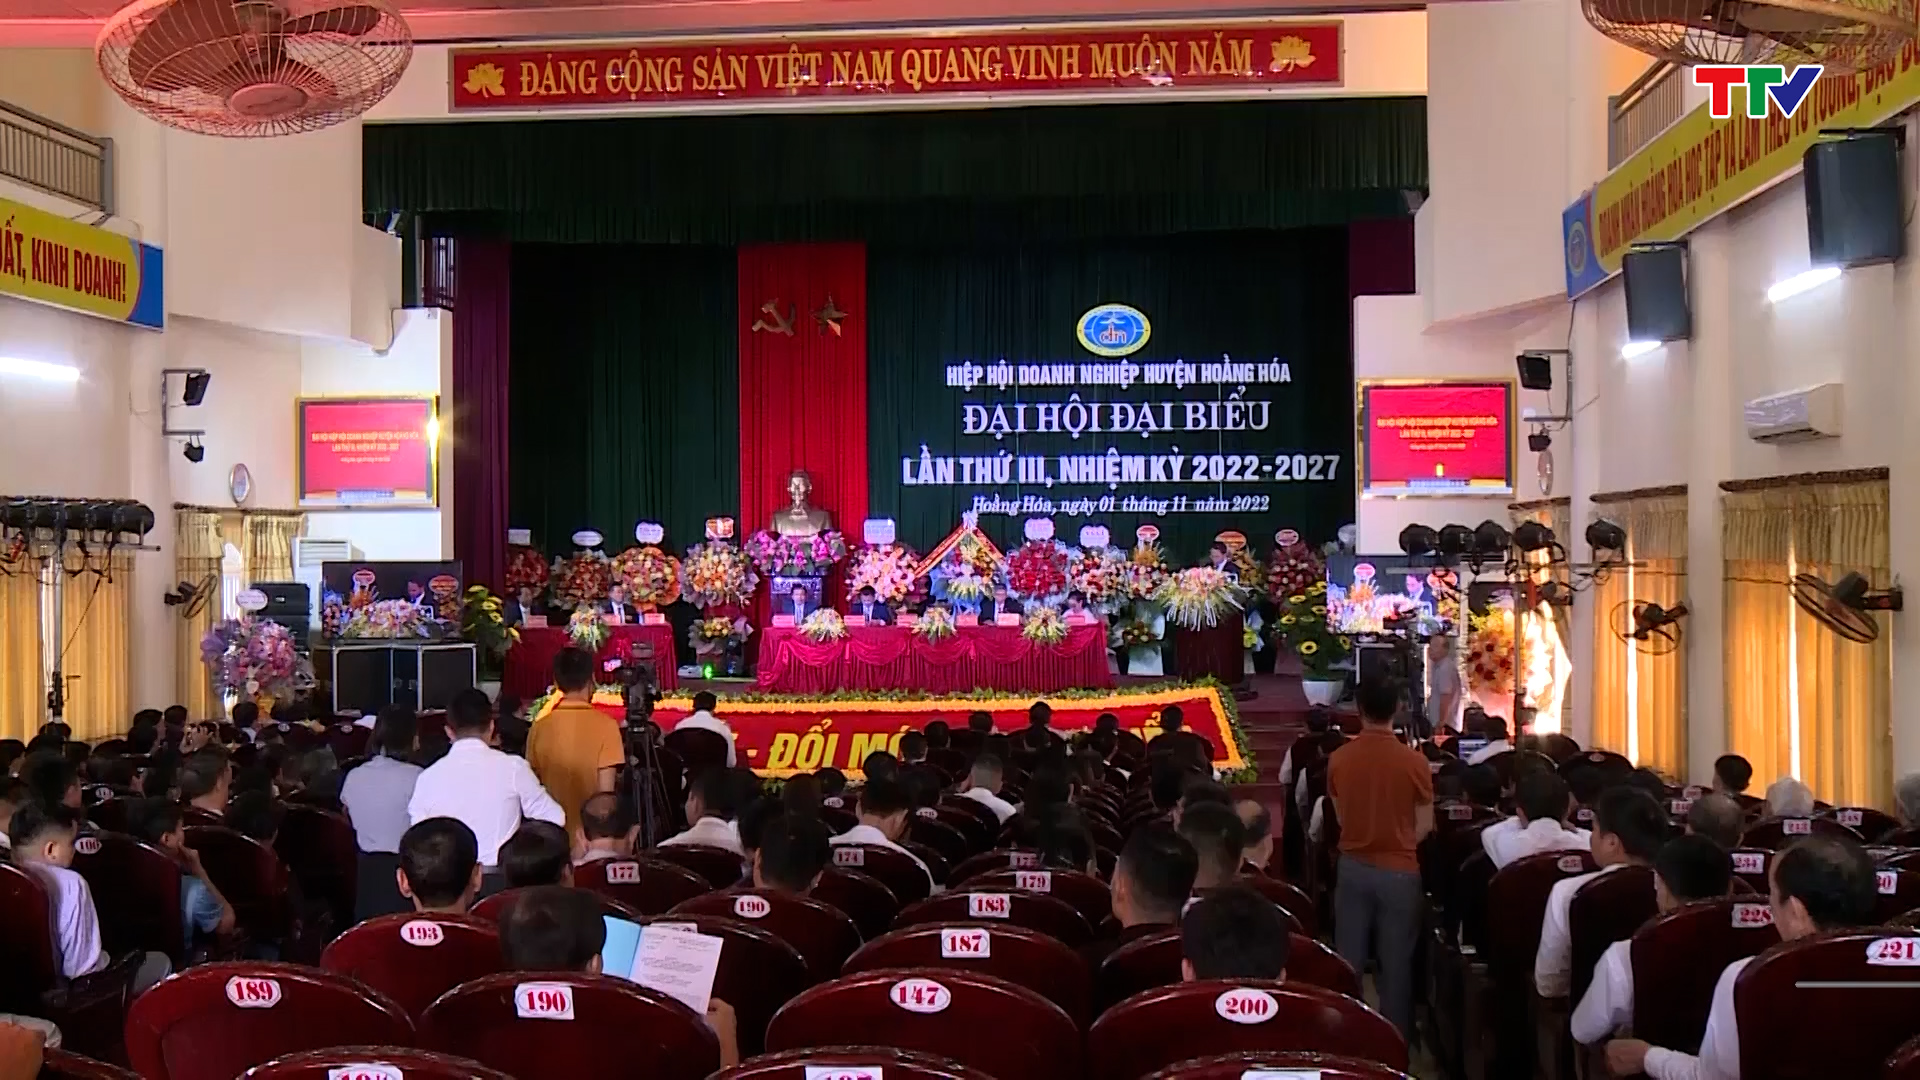 Đại hội Hiệp hội doanh nghiệp huyện Hoằng Hoá lần thứ III, nhiệm kỳ 2022 - 2027 - Ảnh 2.